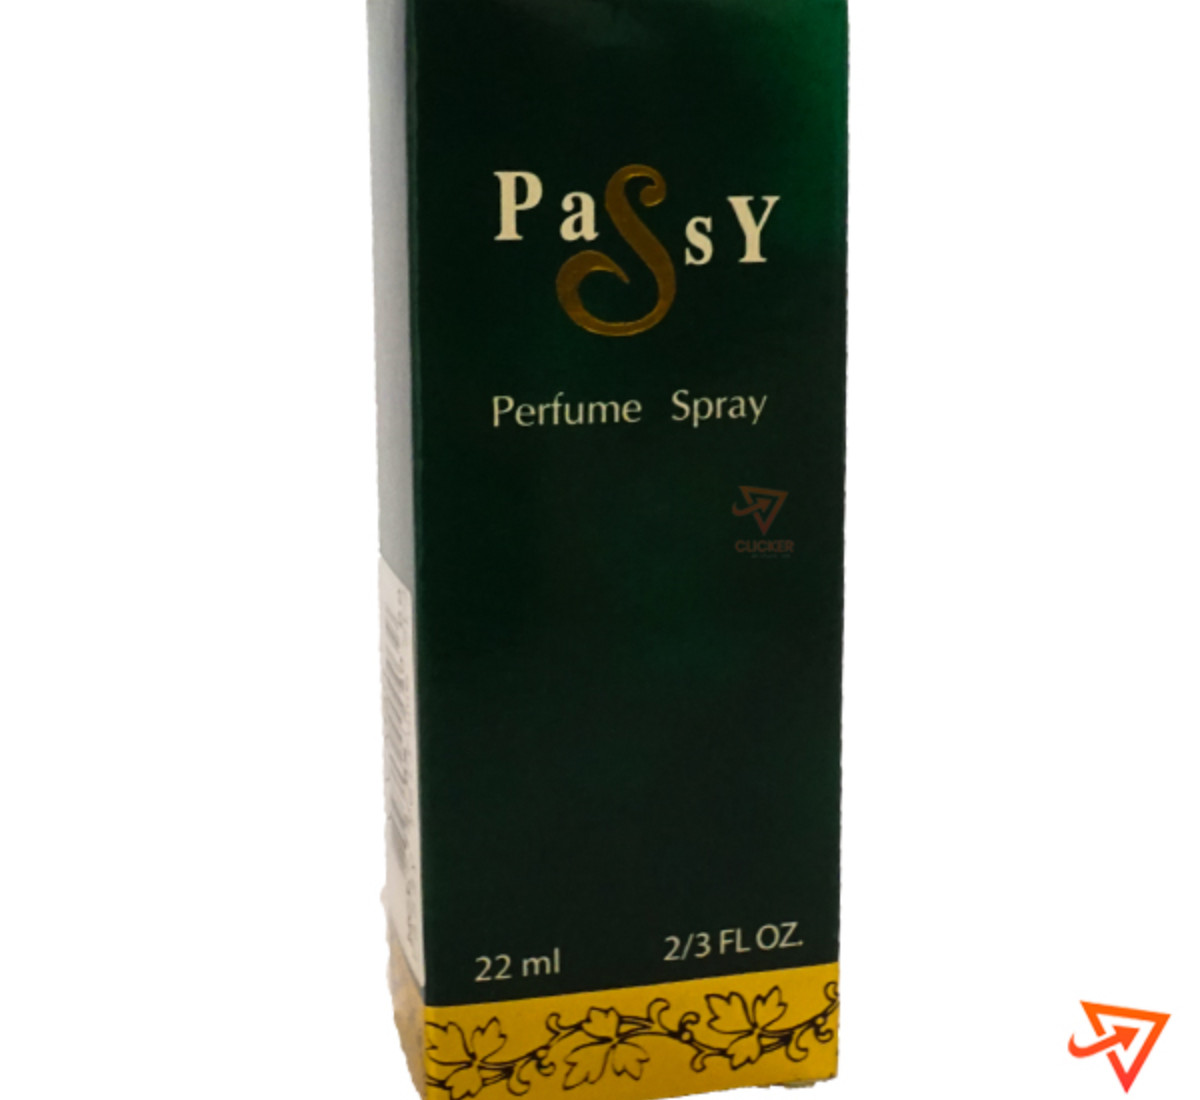 Clicker product 22ml PASSY perfume  spray 1040